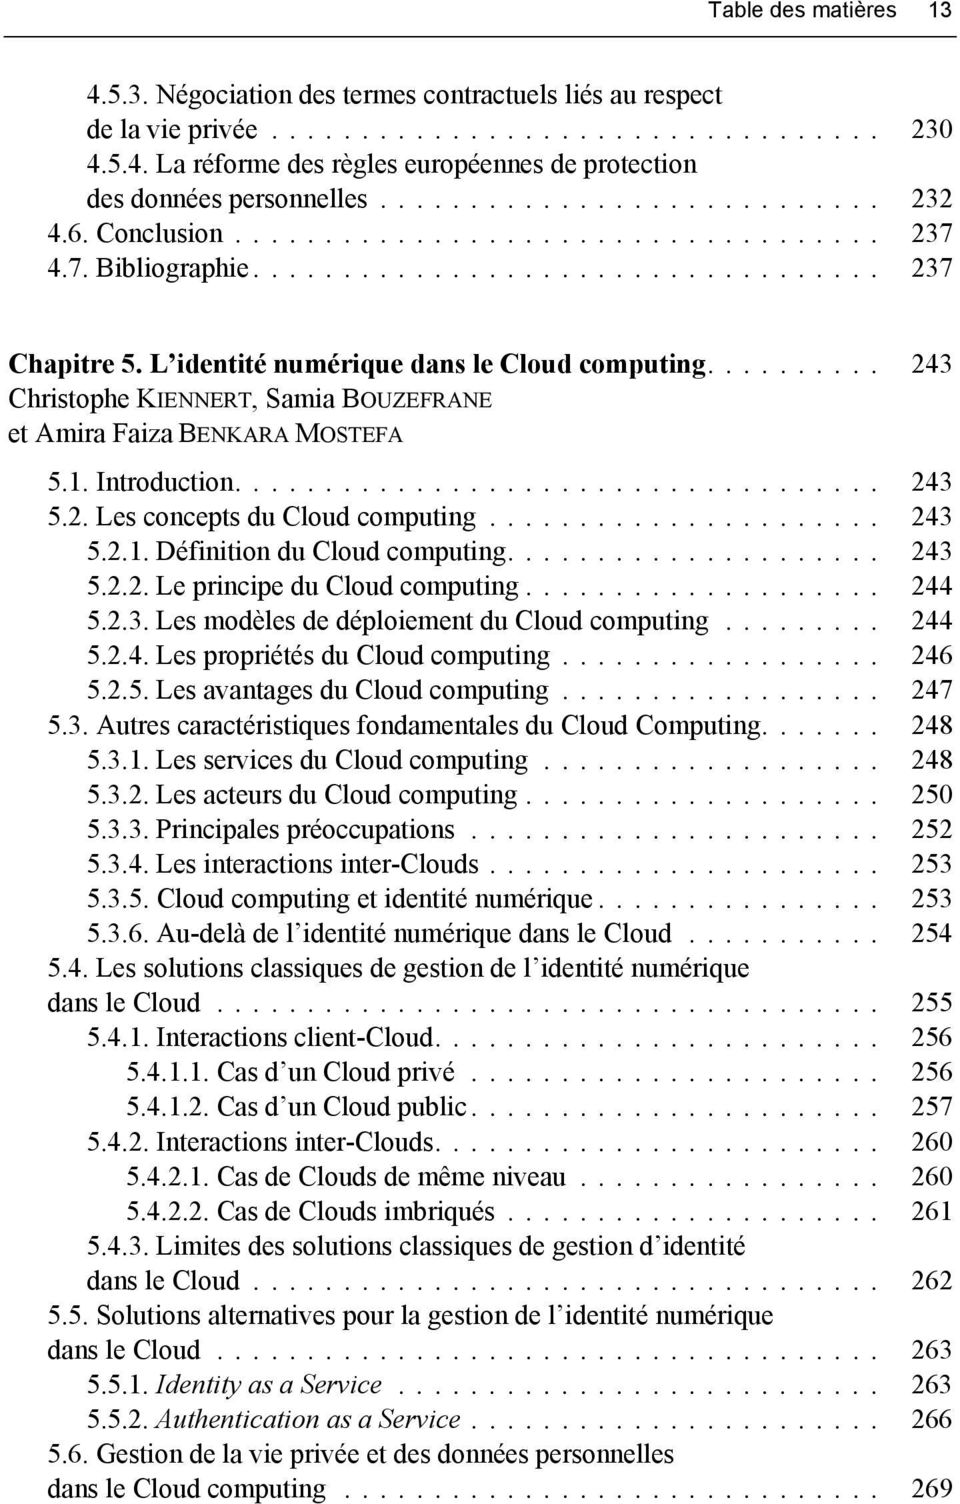 .. 243 5.2. Les concepts du Cloud computing... 243 5.2.1. Définition du Cloud computing... 243 5.2.2. Le principe du Cloud computing... 244 5.2.3. Les modèles de déploiement du Cloud computing... 244 5.2.4. Les propriétés du Cloud computing.